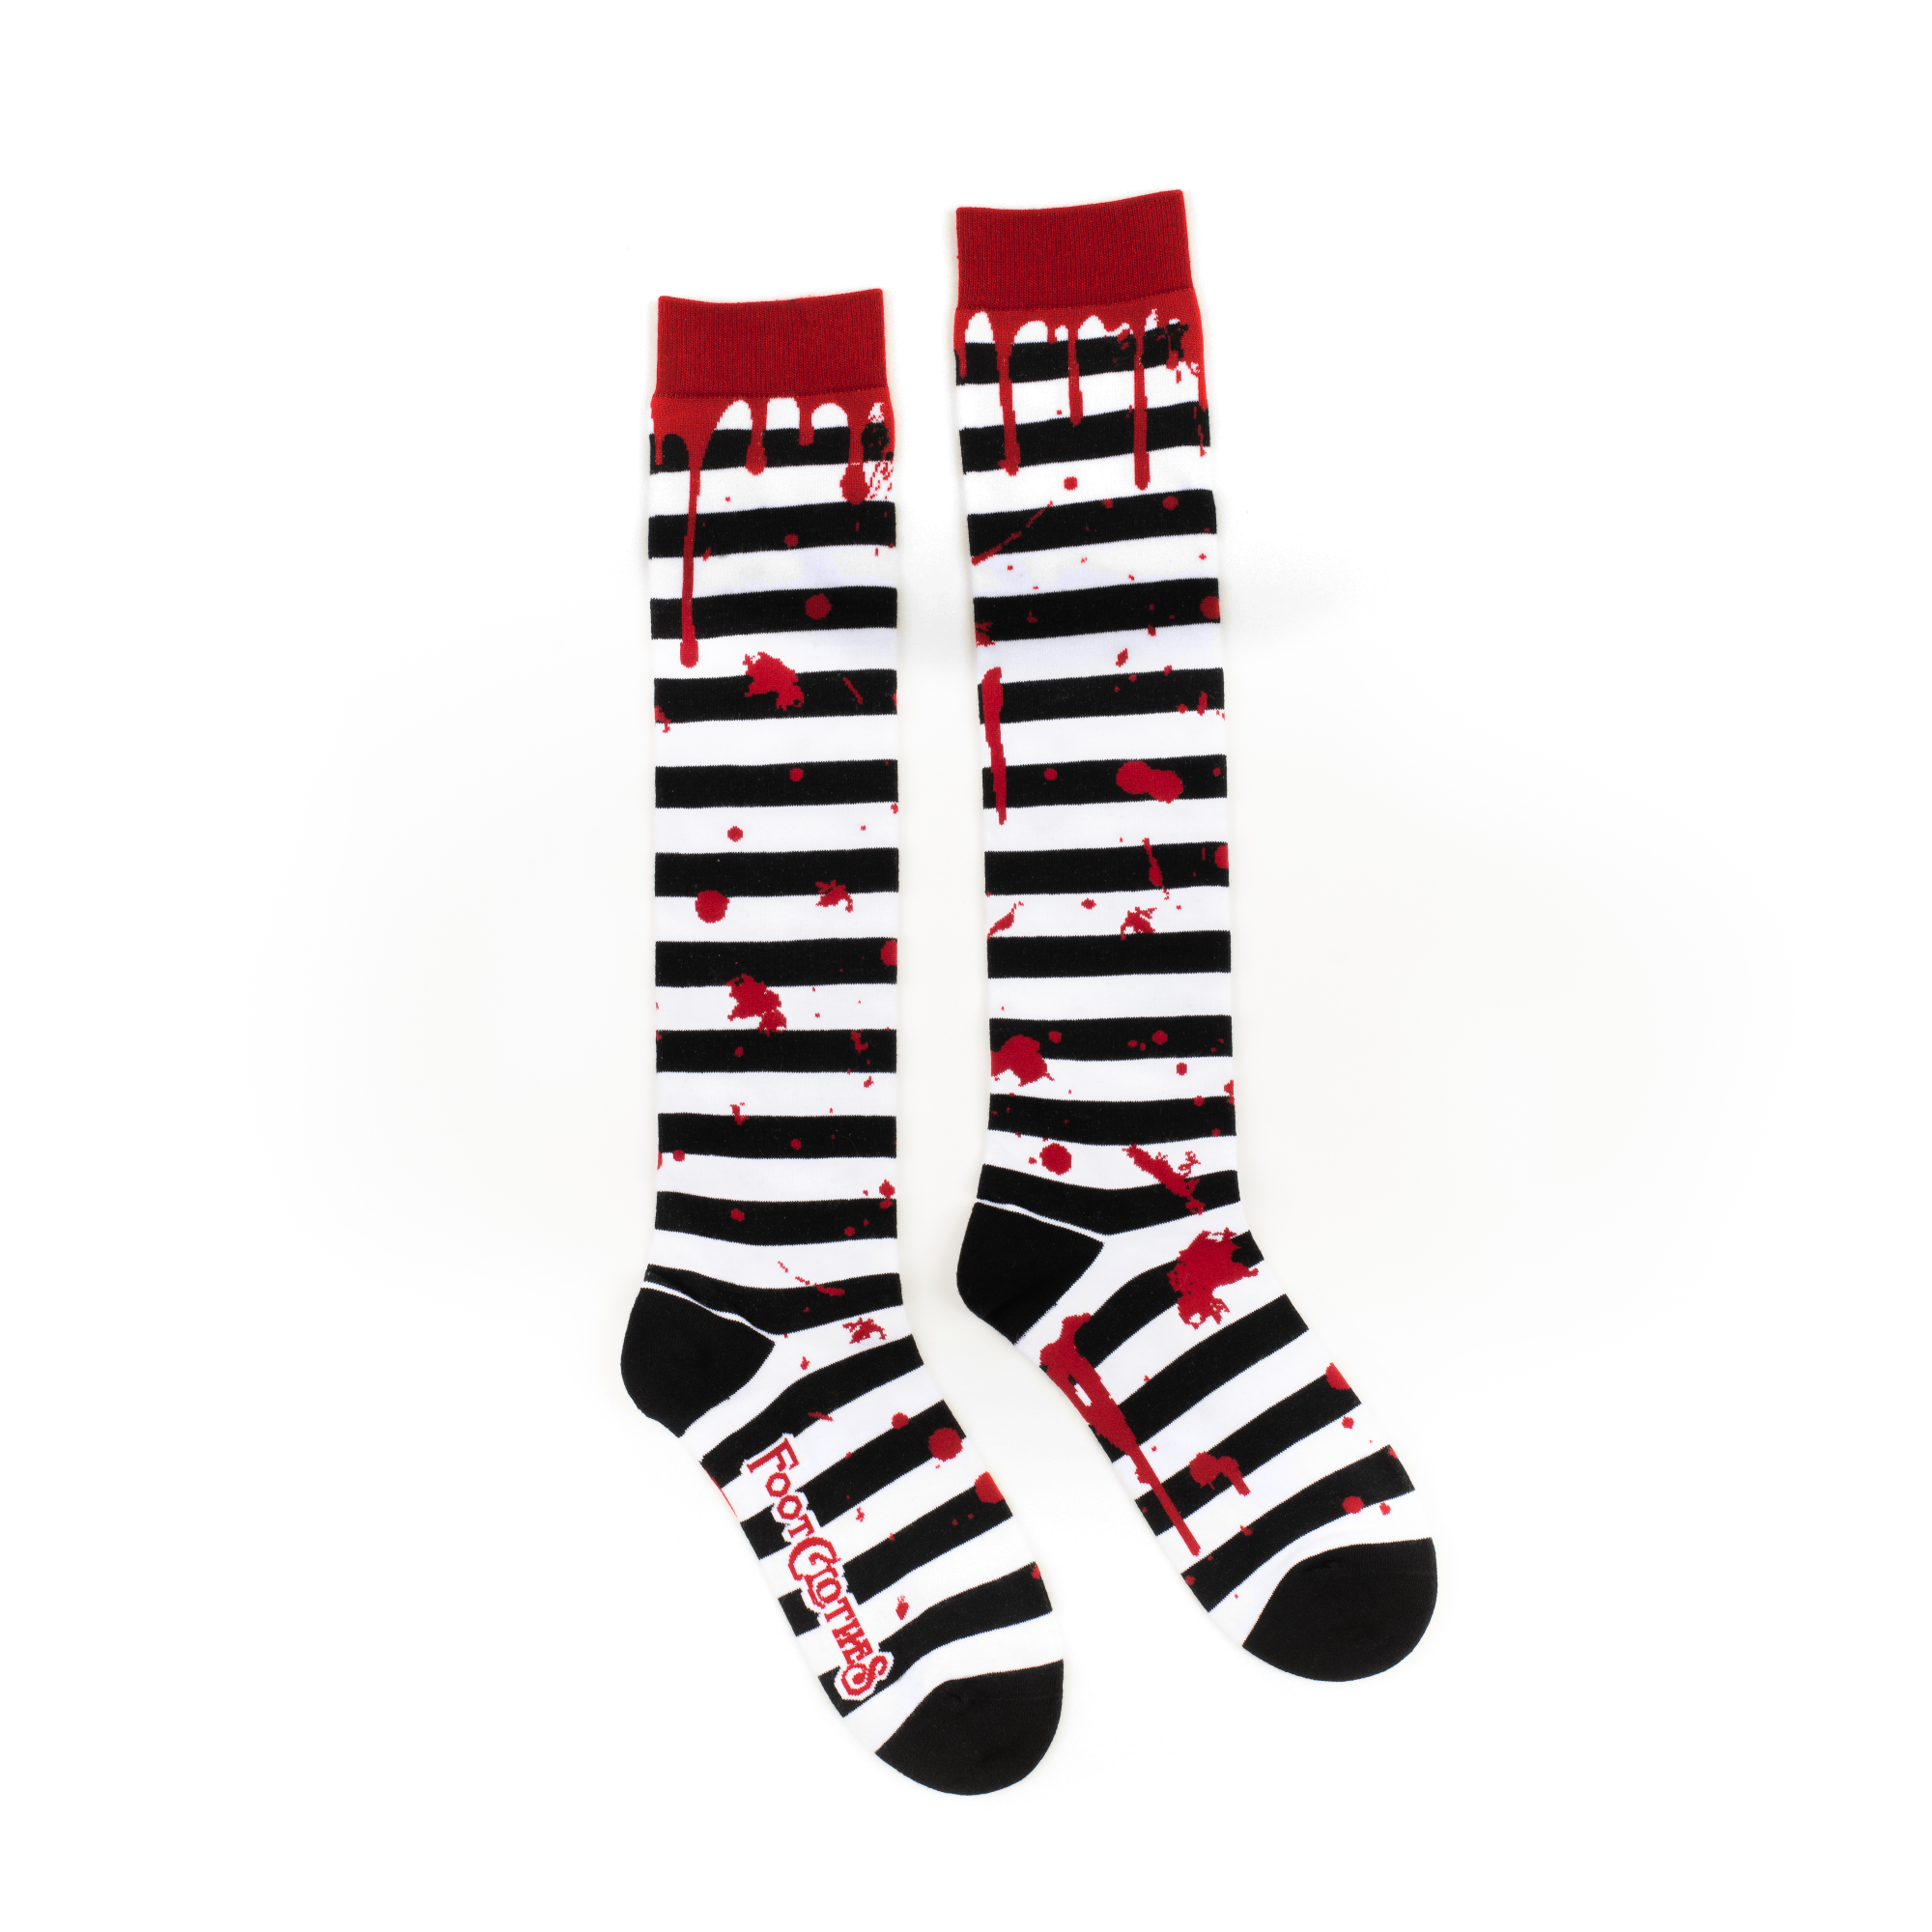 Sanguine Stripes Blood Spatter Knee High Socks